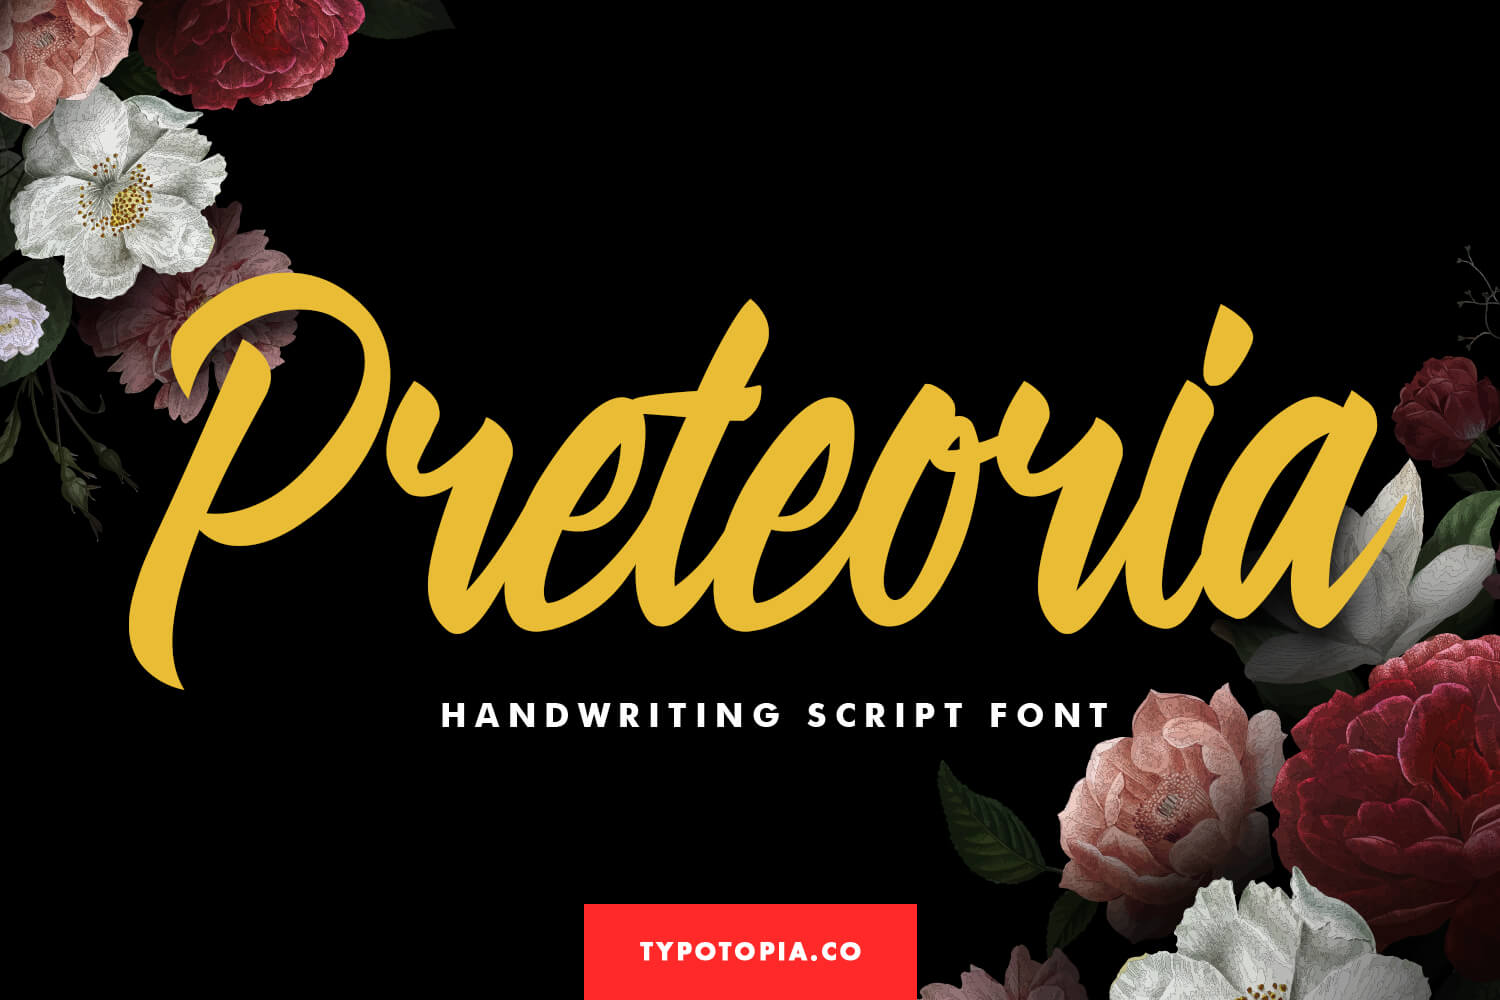 Preteoria Modern Script Font